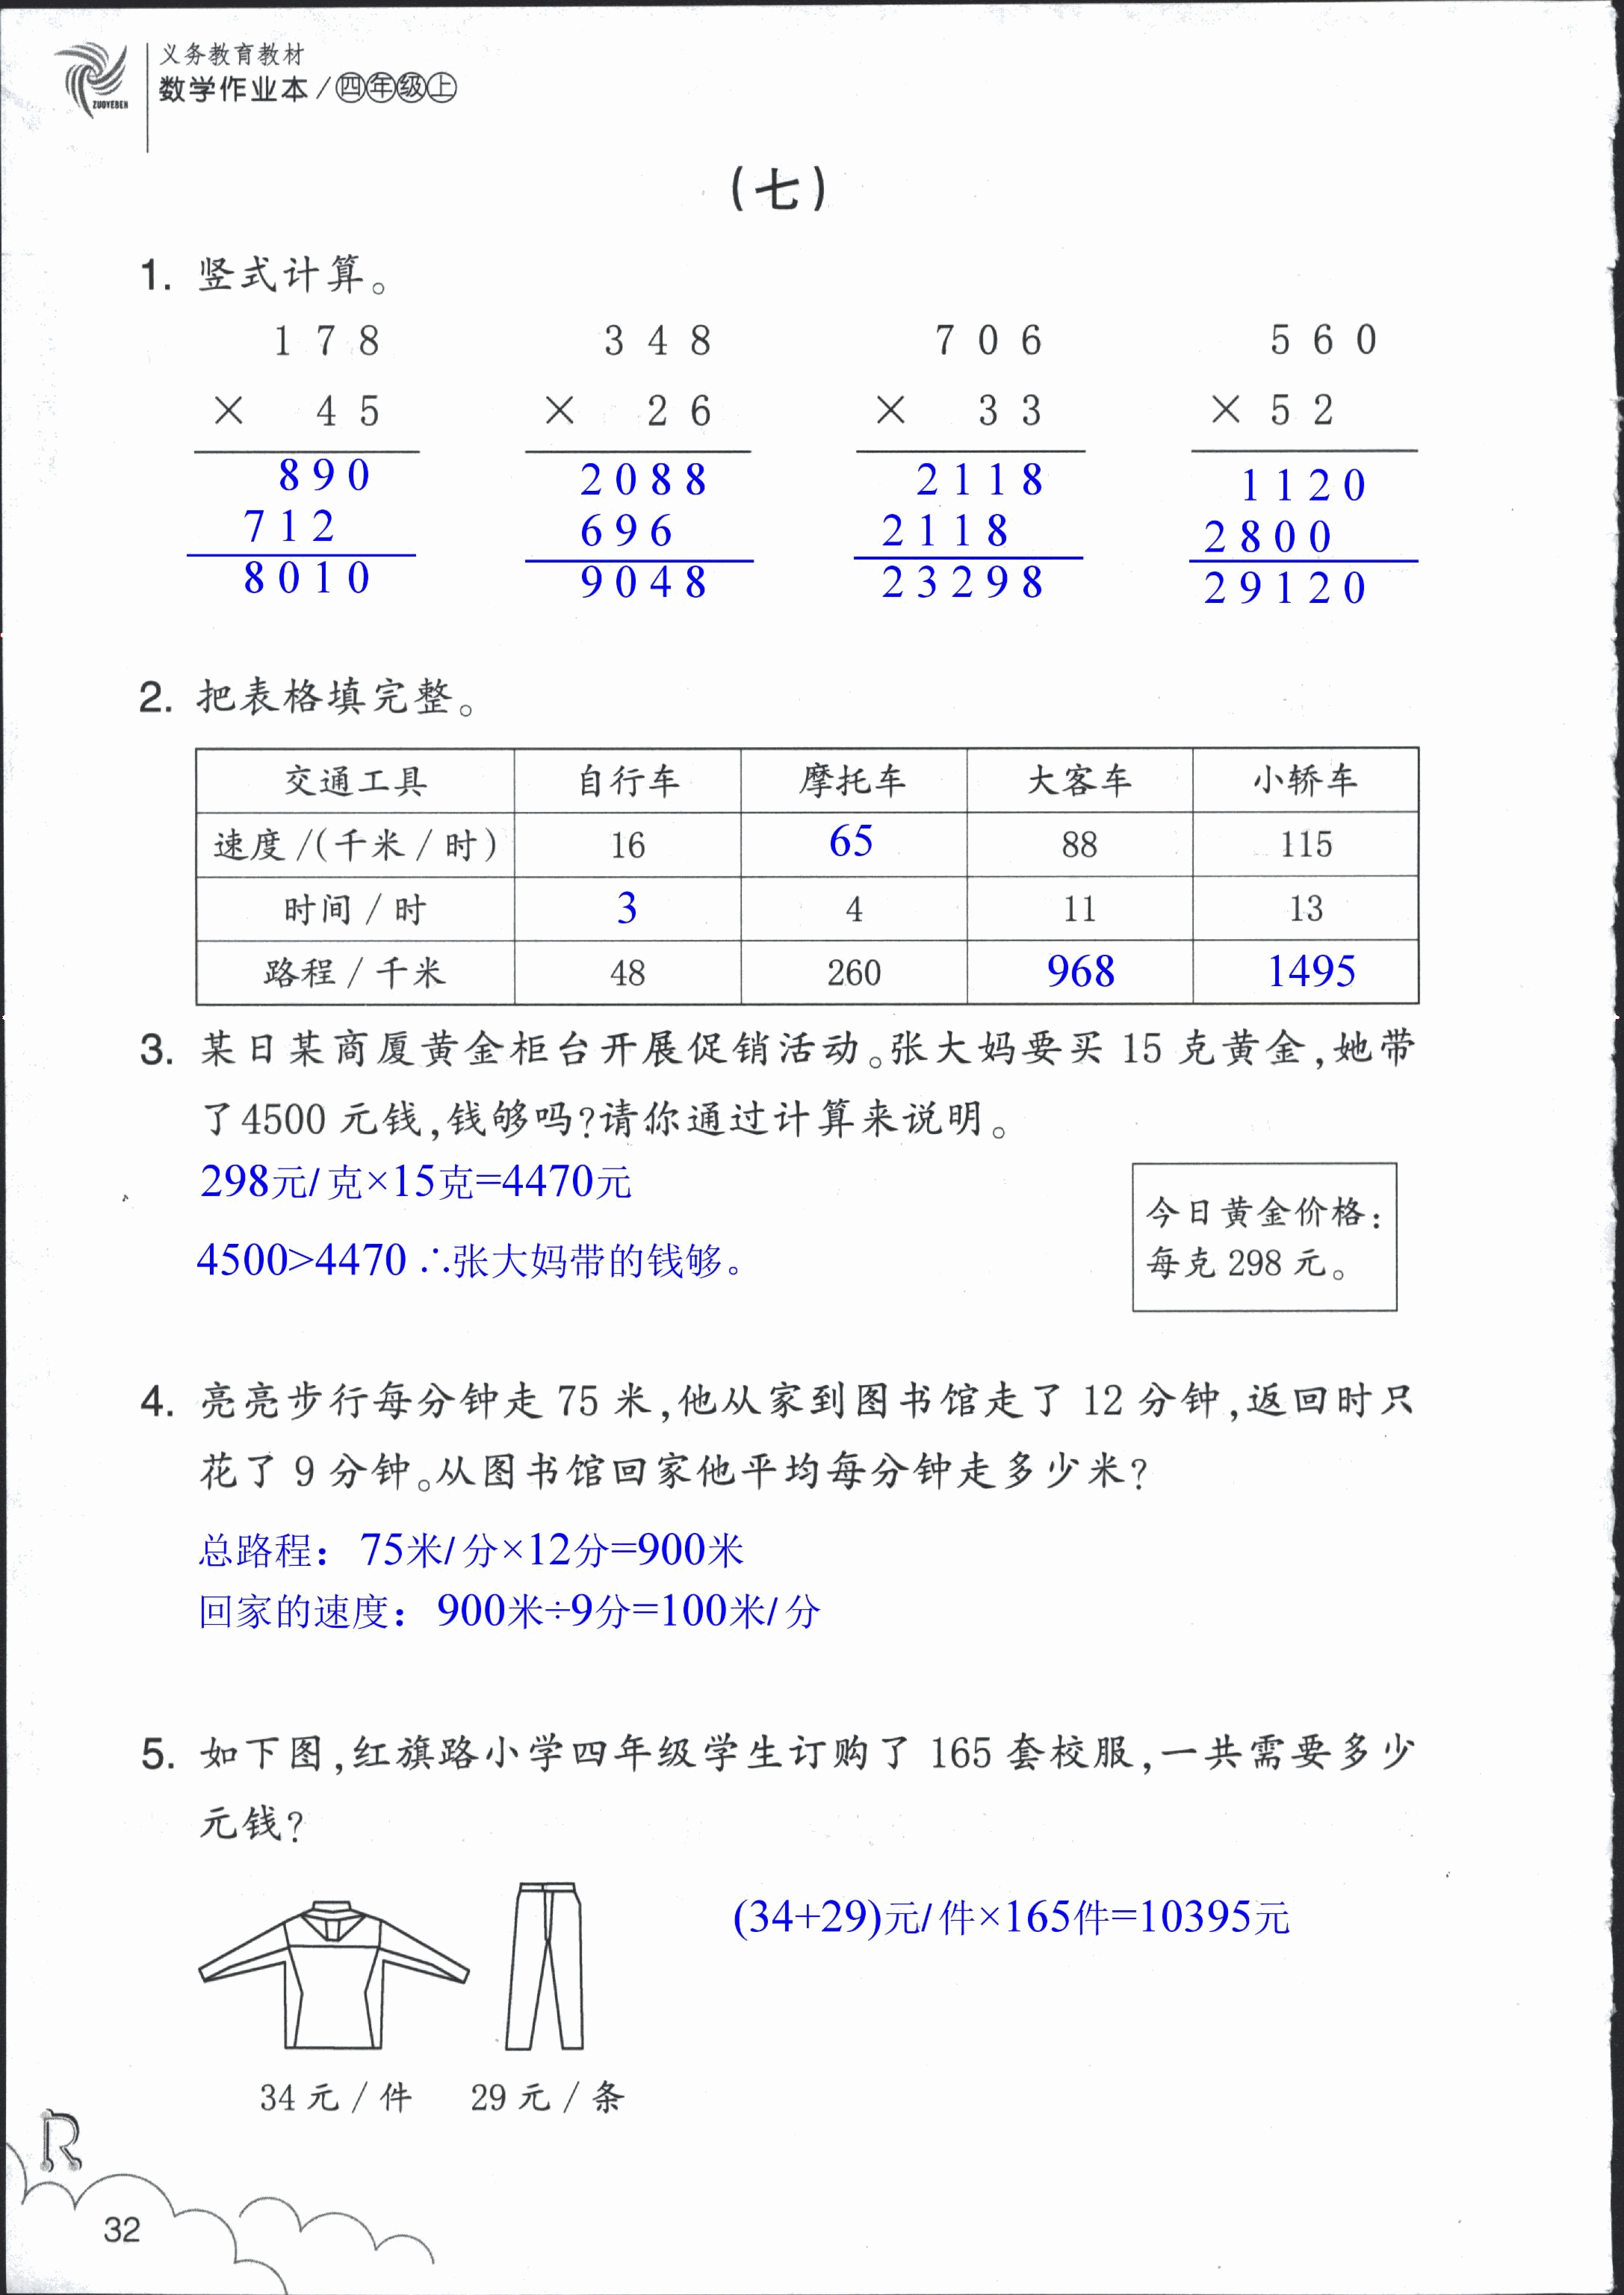 数学作业本 第32页